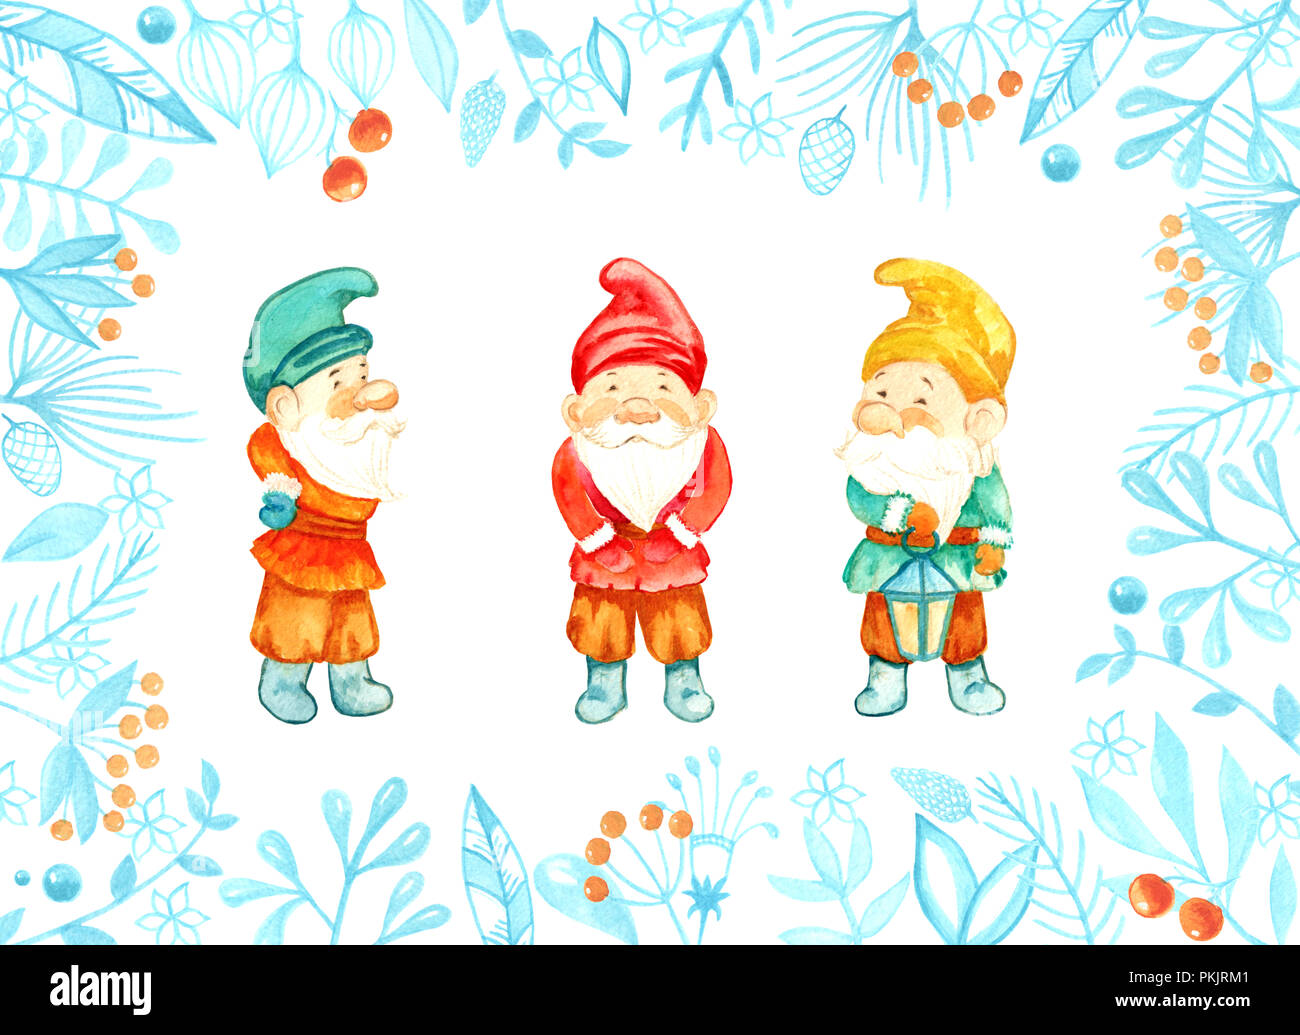 Personnages de contes de fées gnomes. Aquarelle carte de Noël avec des gnomes Banque D'Images